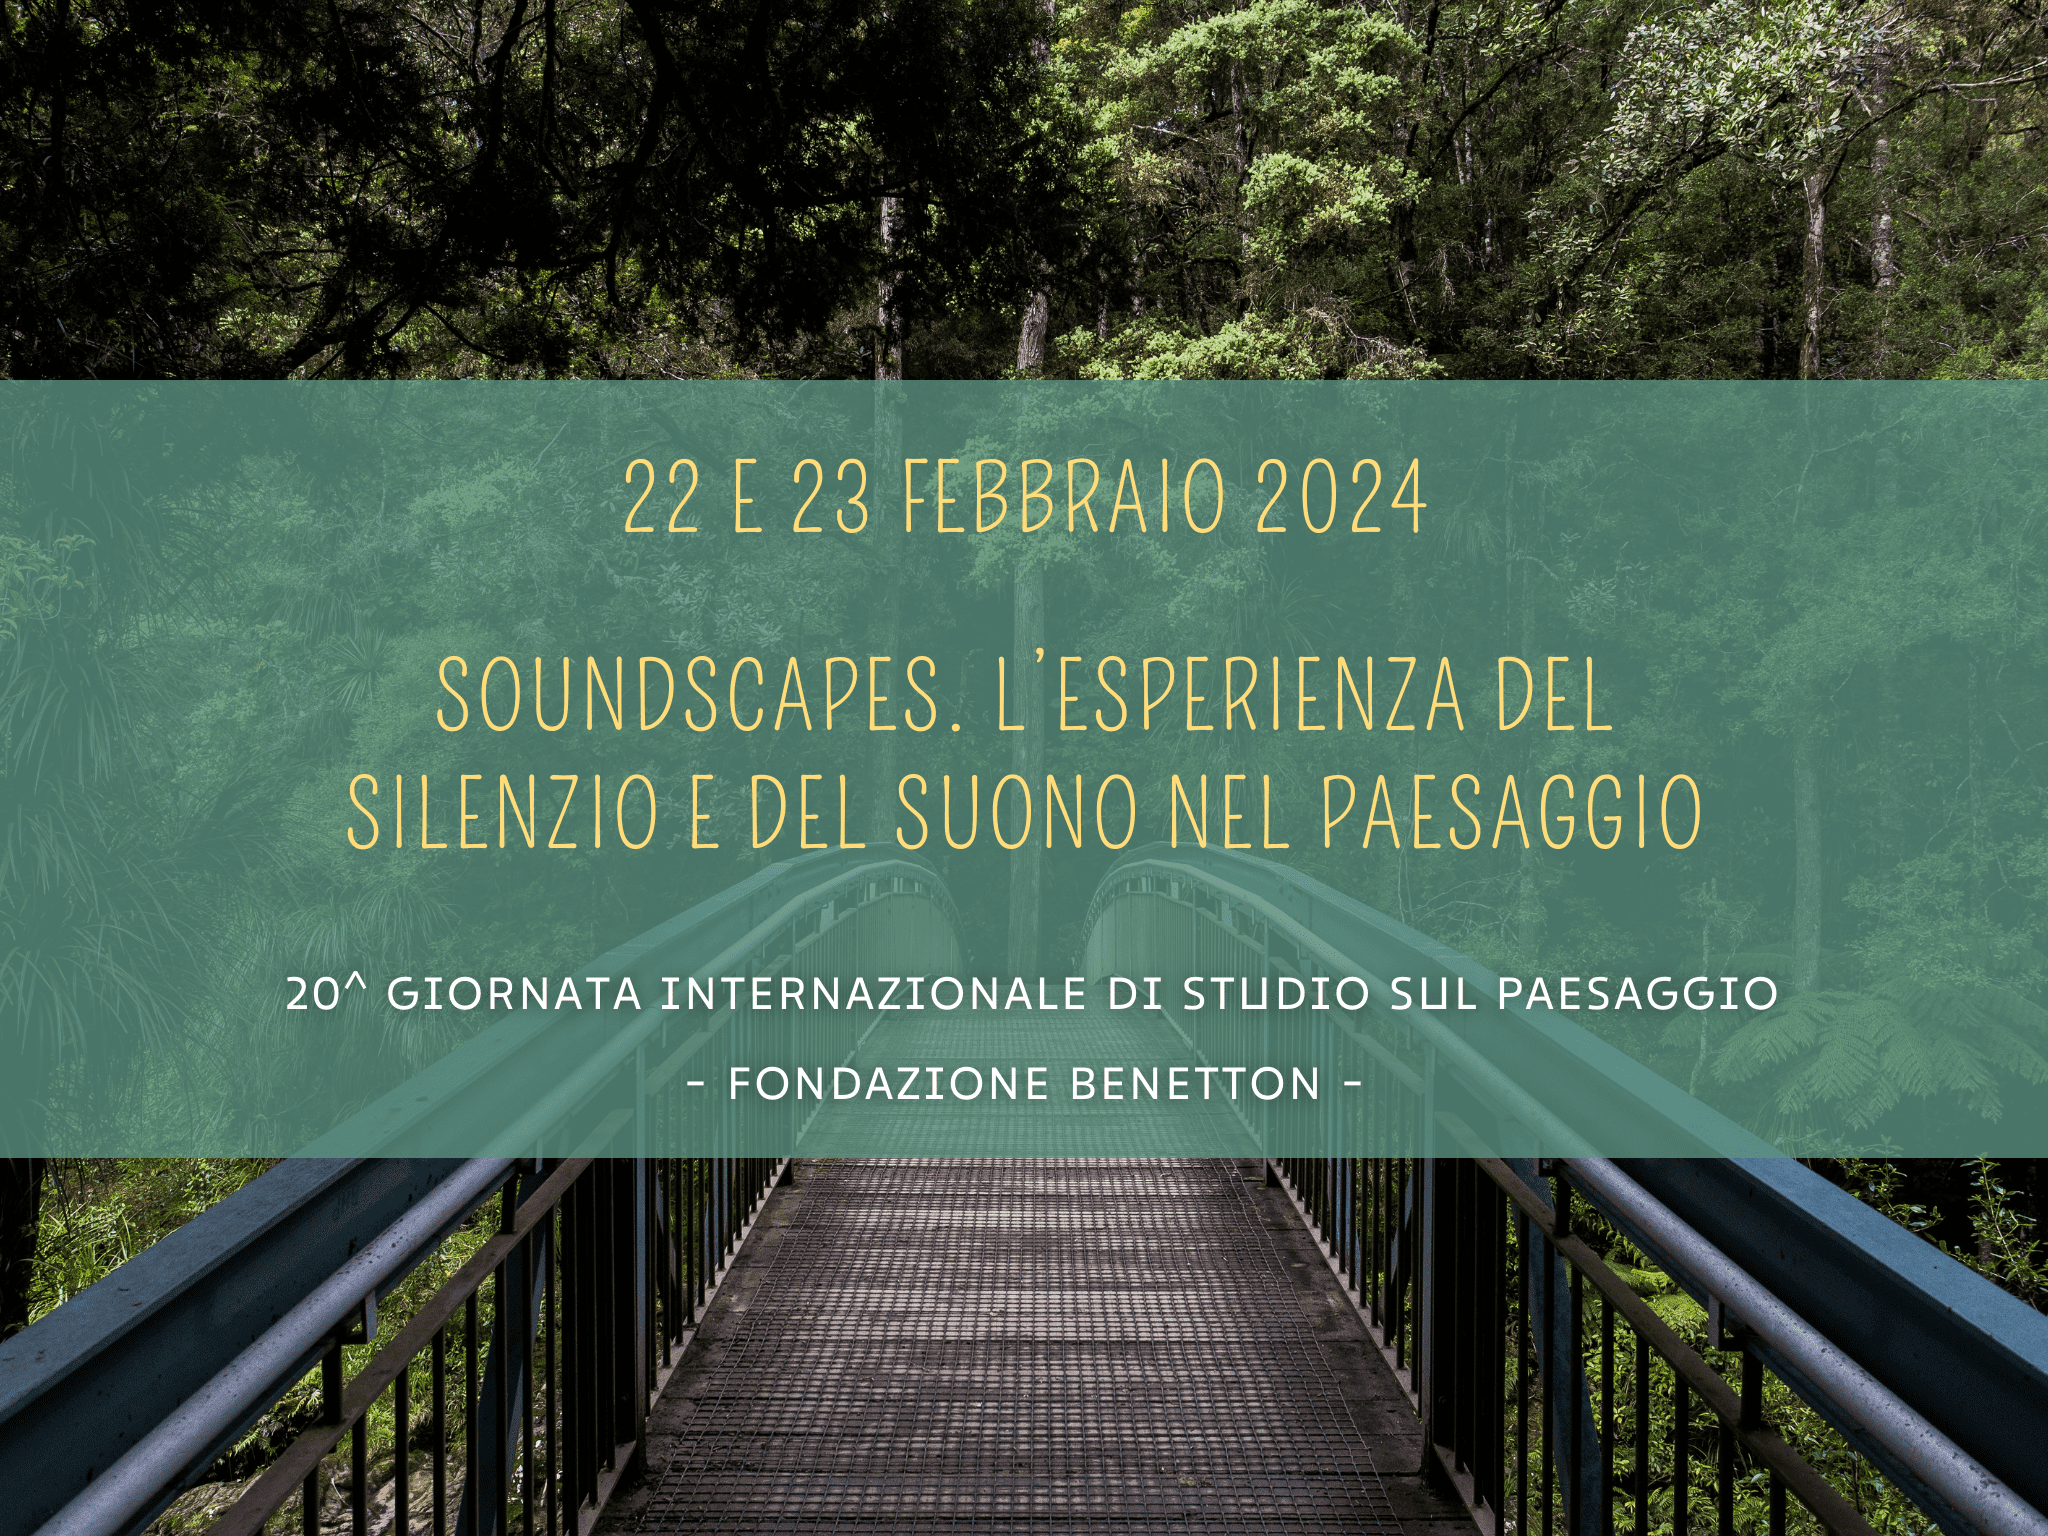 Giornate Internazionali Studio Paesaggio di Fondazione Benetton dal 22 al 23 febbraio 2024. Soundscapes, il tema della ventesima edizione